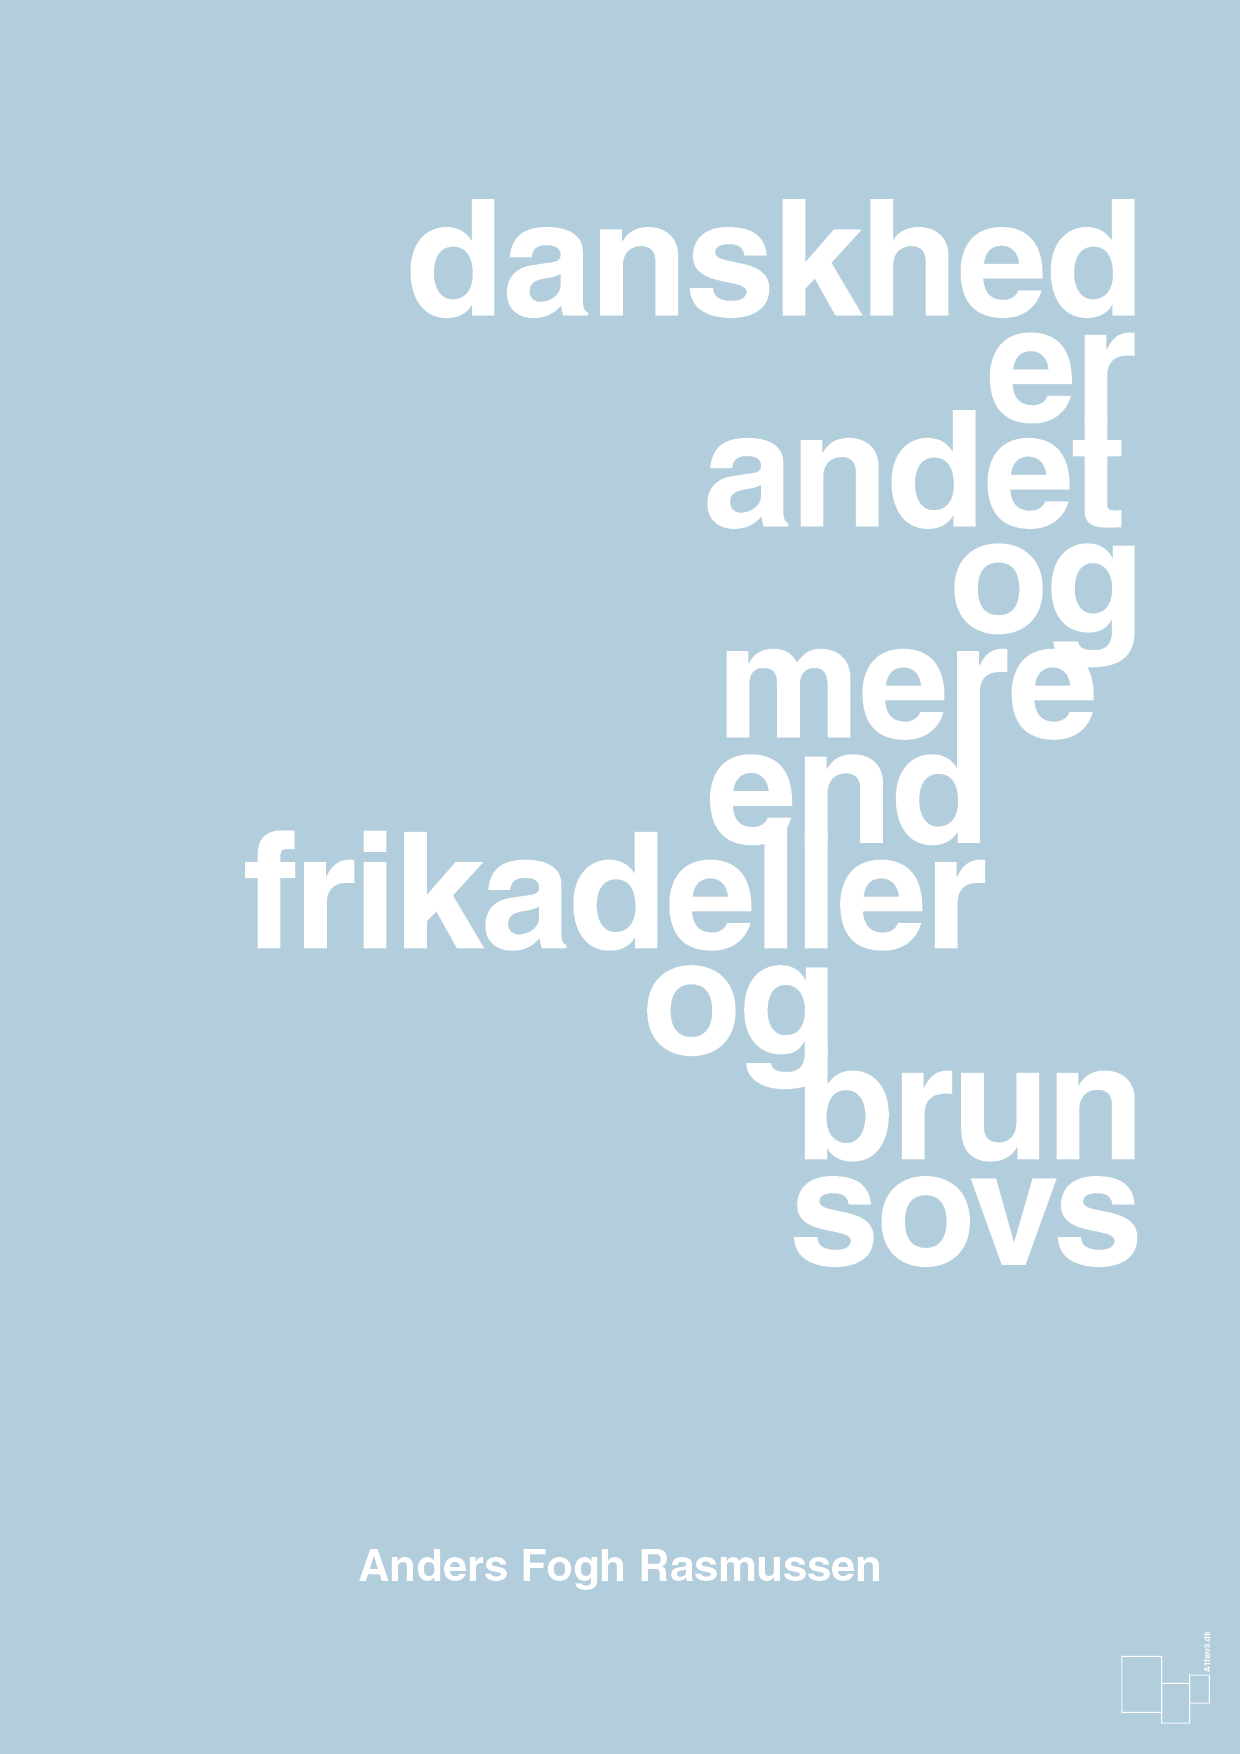 danskhed er andet og mere end frikadeller og brun sovs - Plakat med Citater i Heavenly Blue